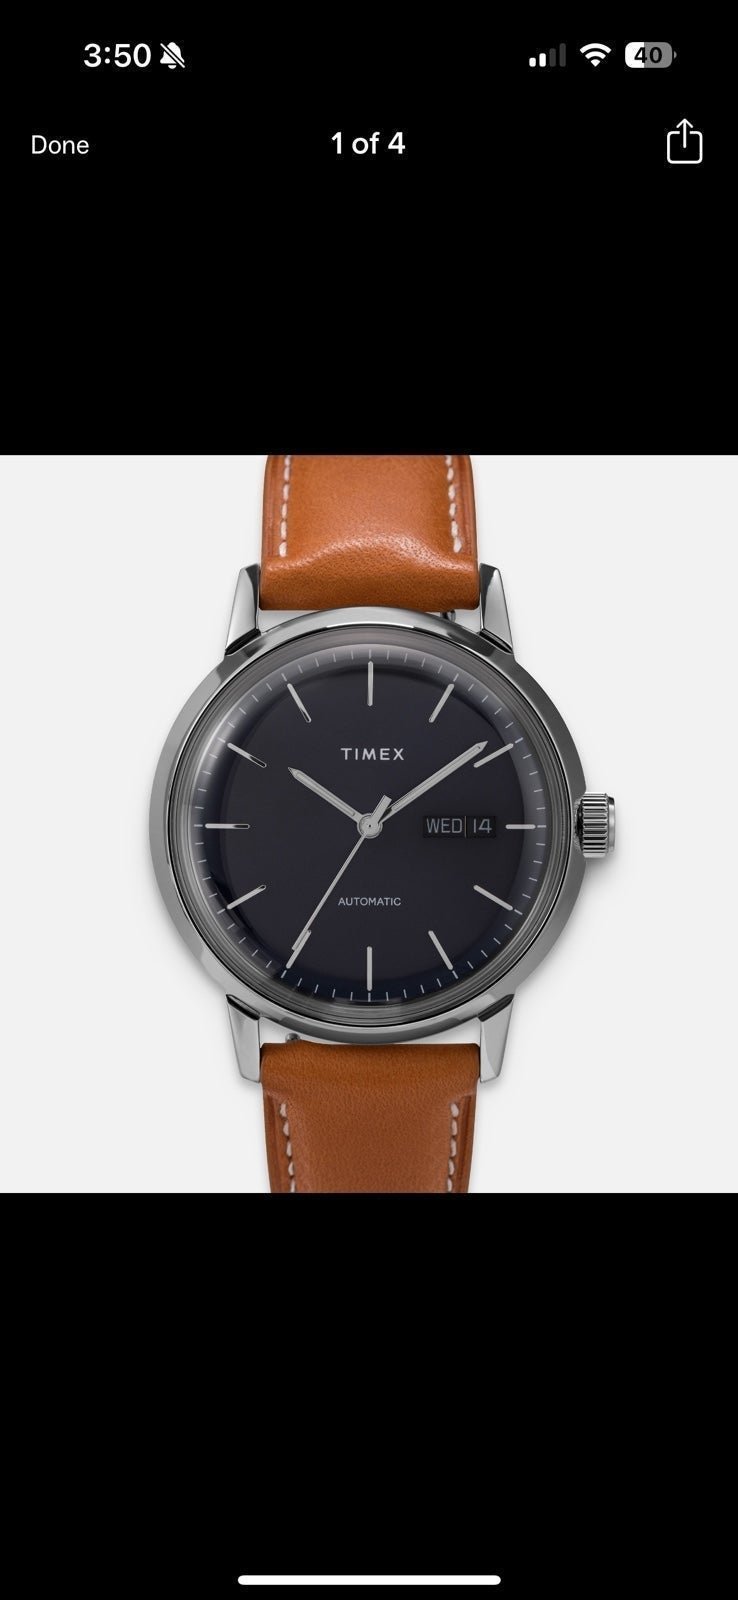 Timex Watch dZfFf1Ly8